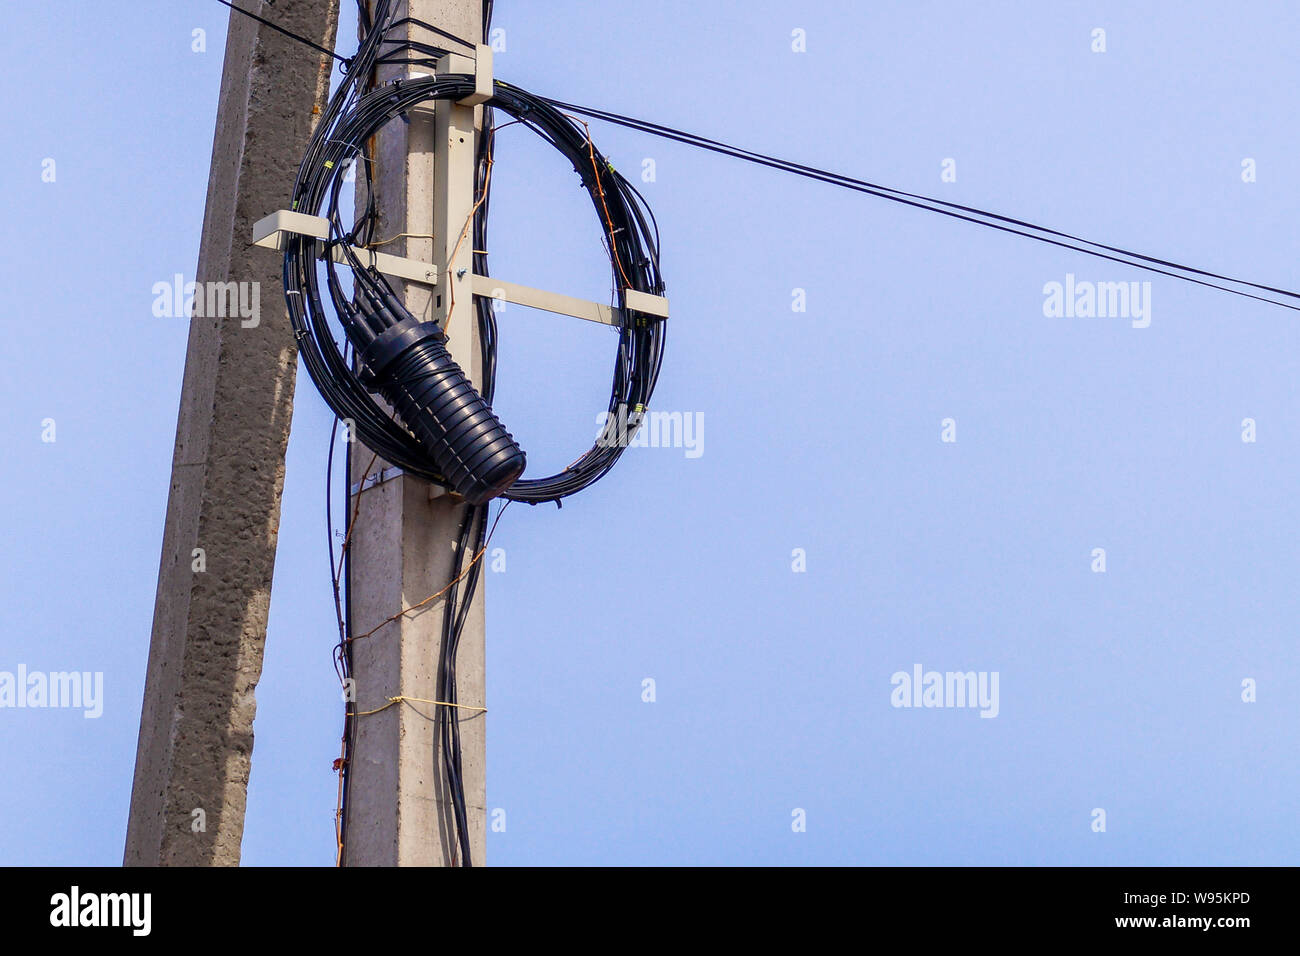 Una internet o cable eléctrico, enrollada en un anillo, cuelga de un poste.  El paisaje de la ciudad Fotografía de stock - Alamy